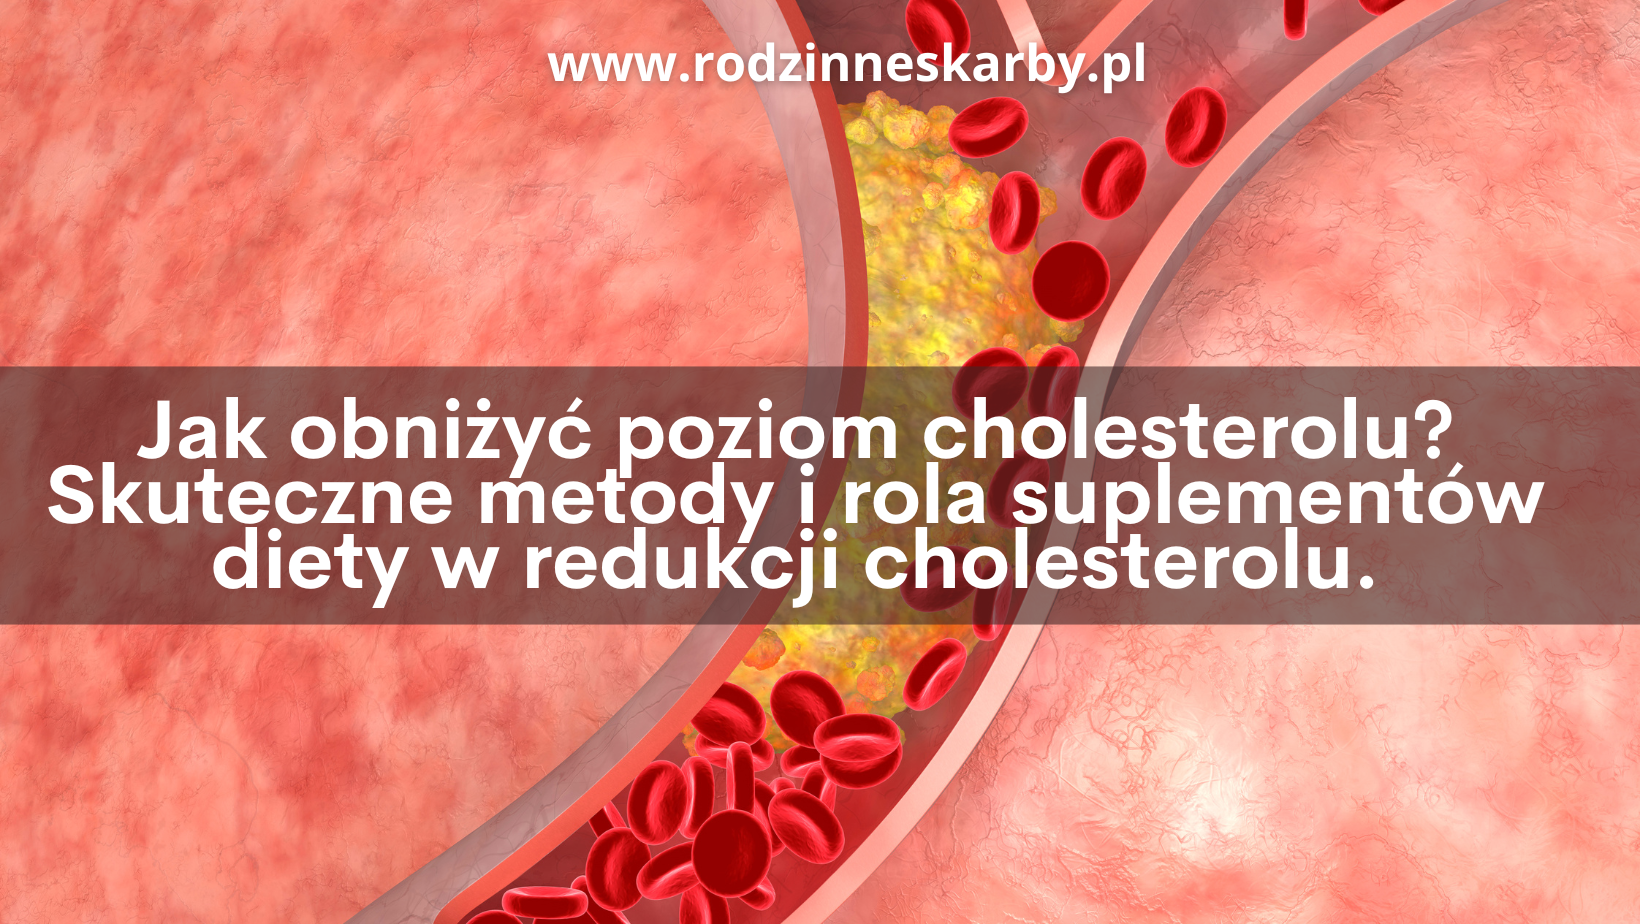 Jak obniżyć poziom cholesterolu? Skuteczne metody i rola suplementów diety w redukcji cholesterolu.